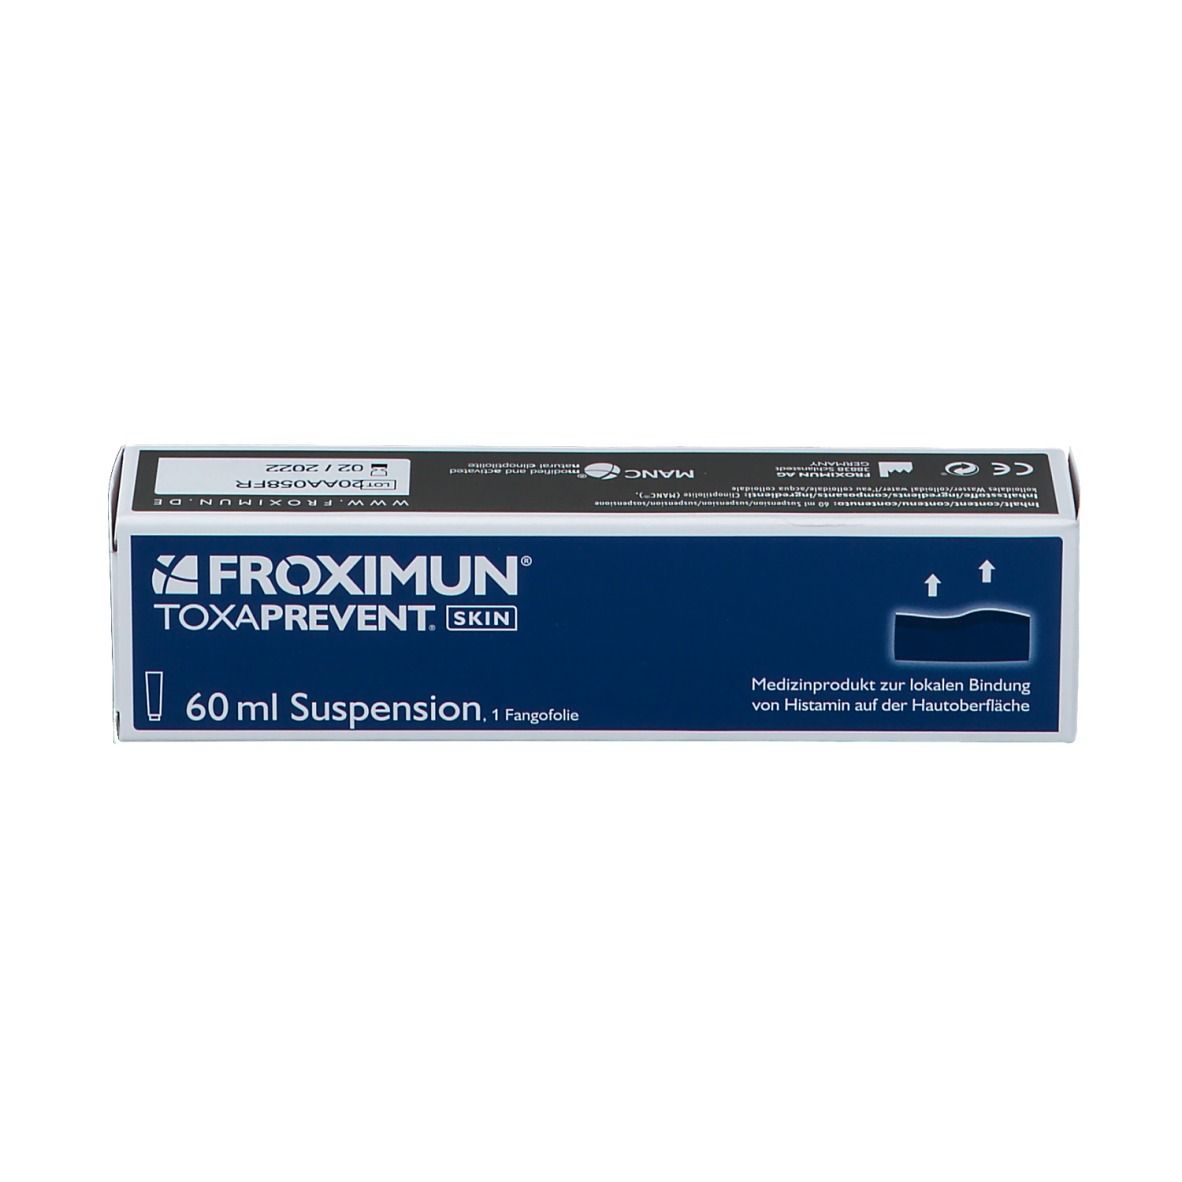 FROXIMUN® TOXAPREVENT SKIN